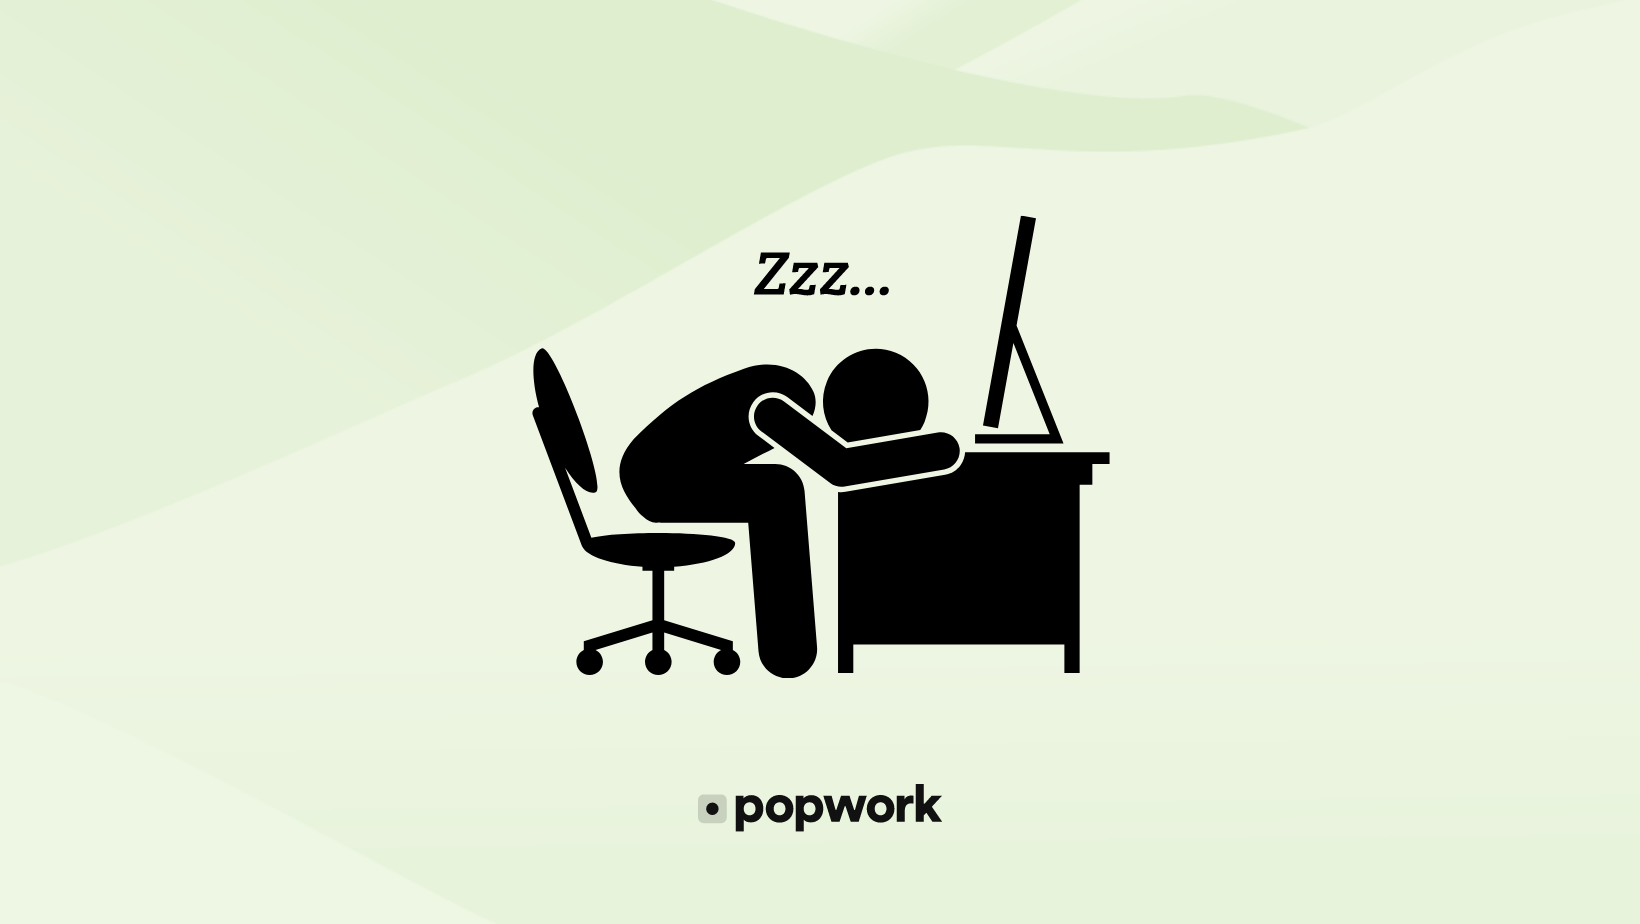 Employee sleeping on a desk - Popwork